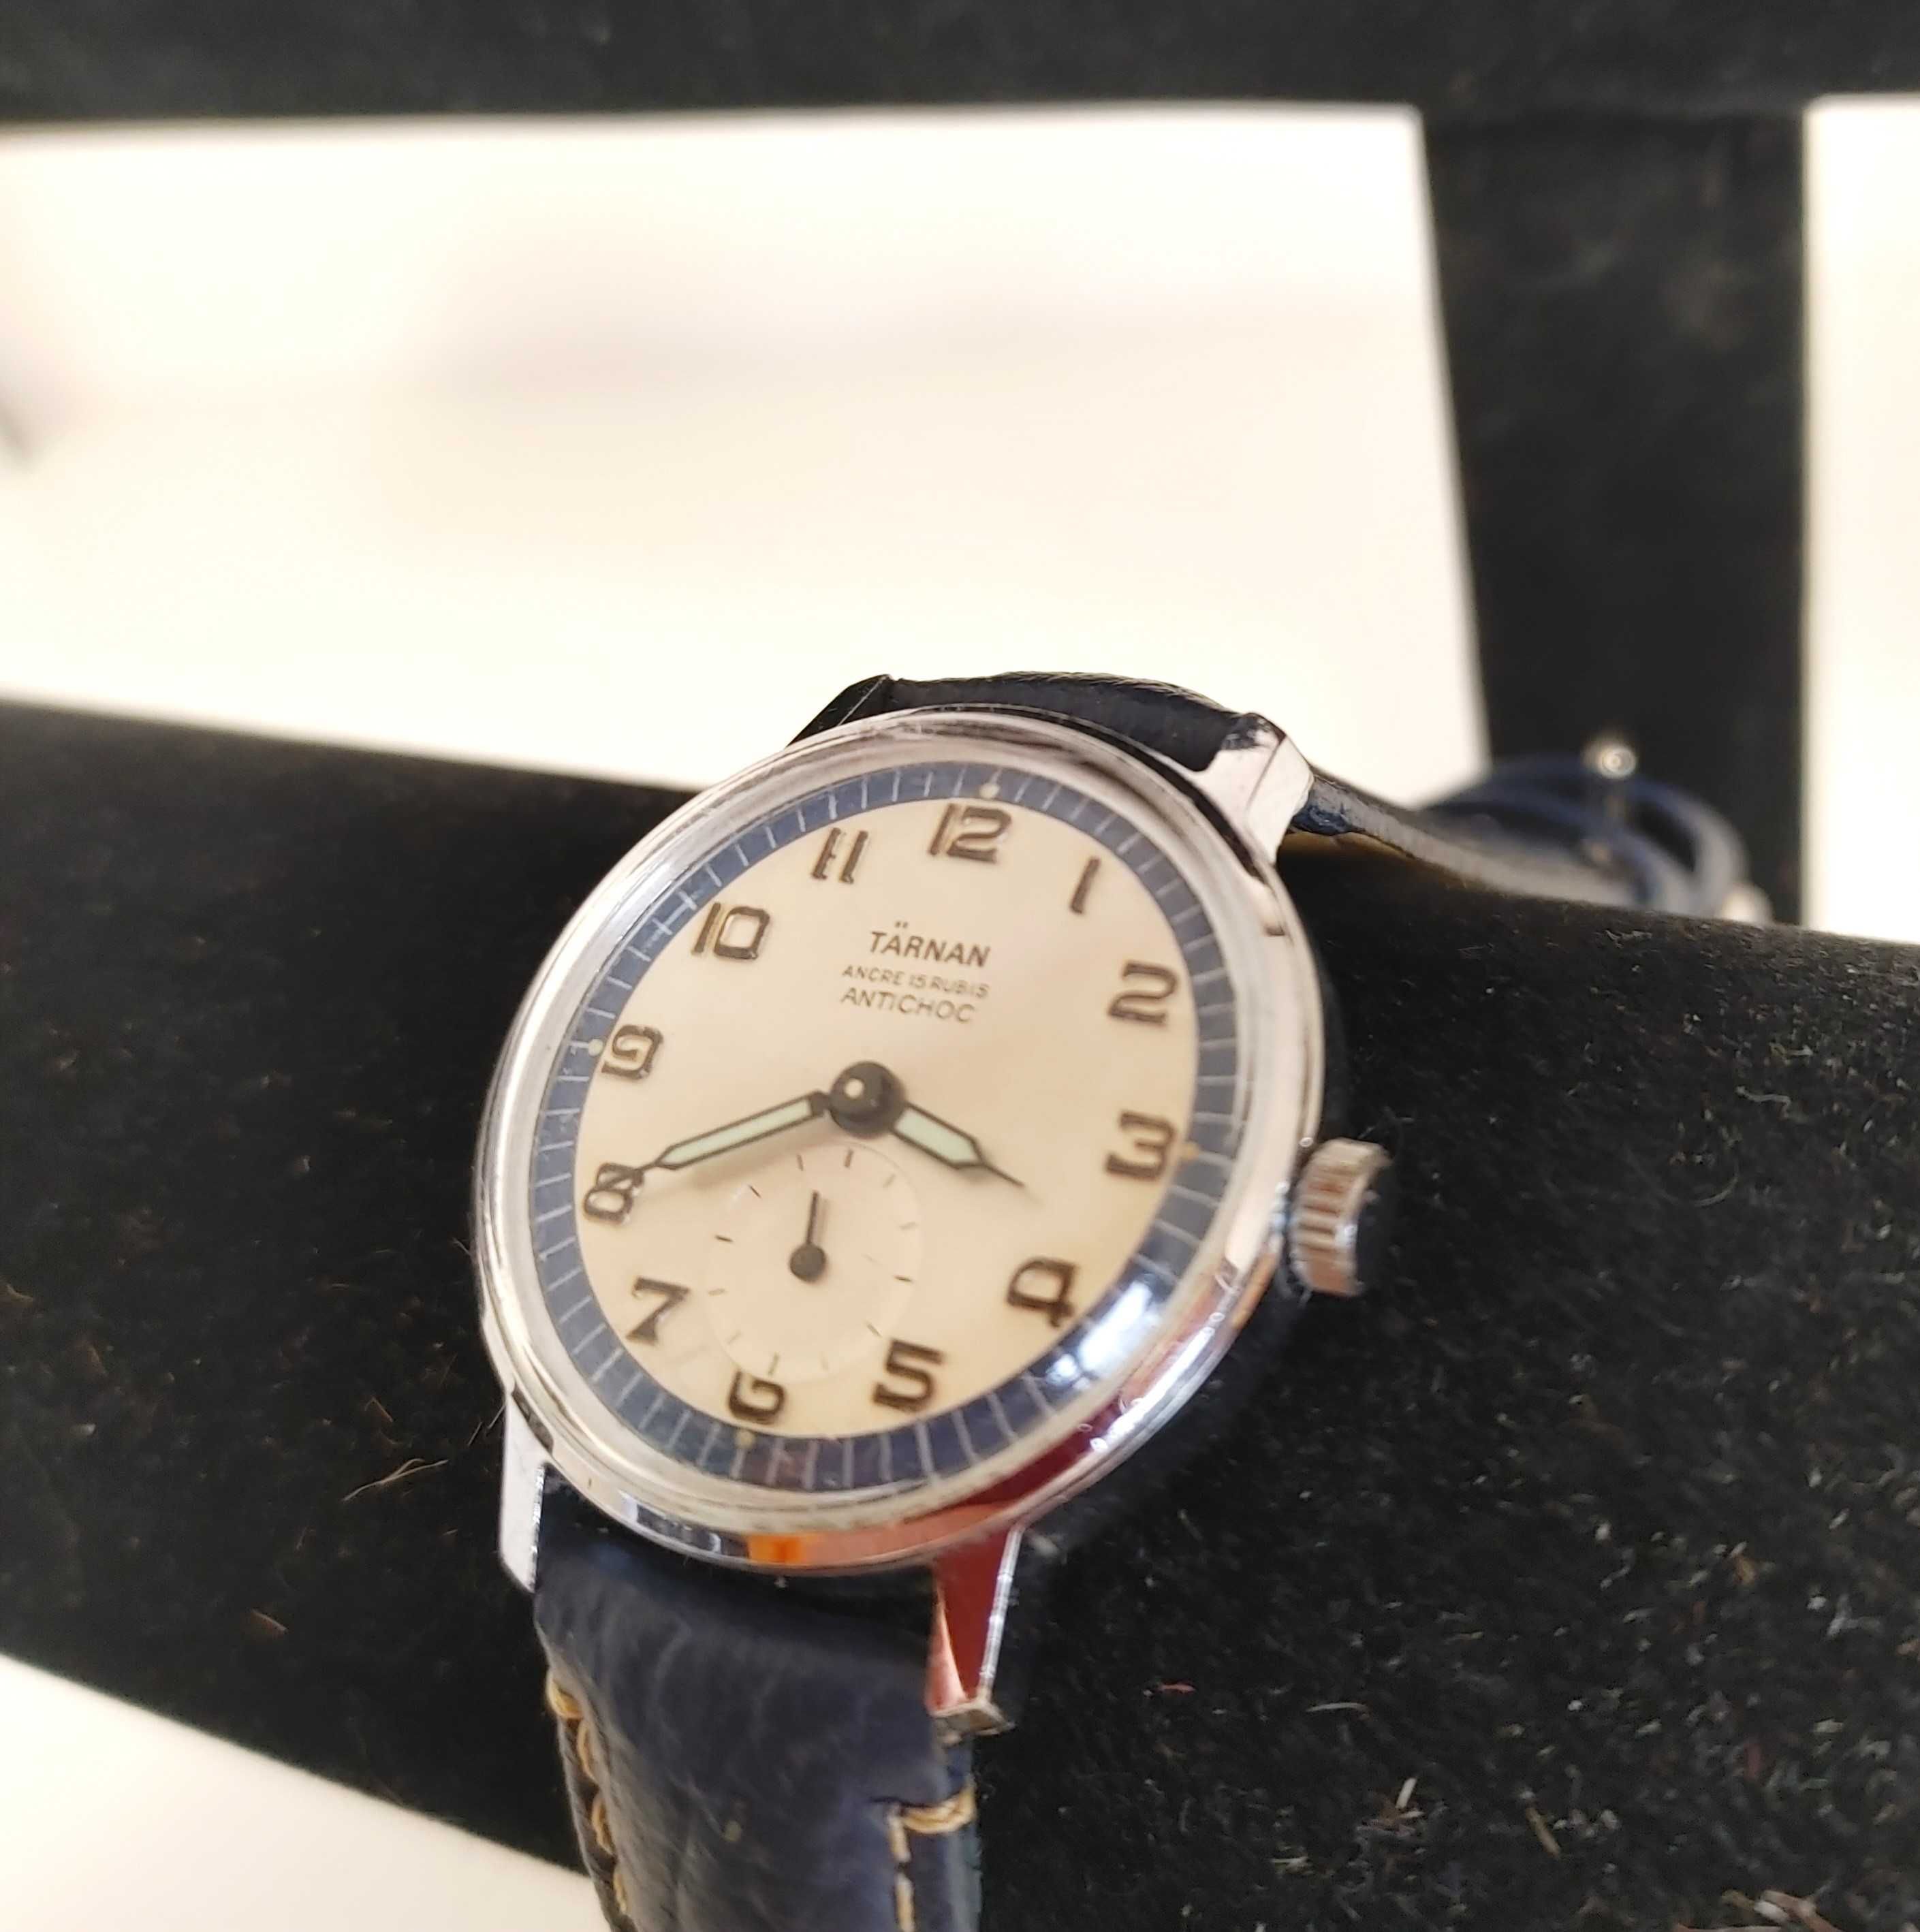 W bardzom ładnym stanie zegarek TARNAN Antichoc lata 70 te XX wieku